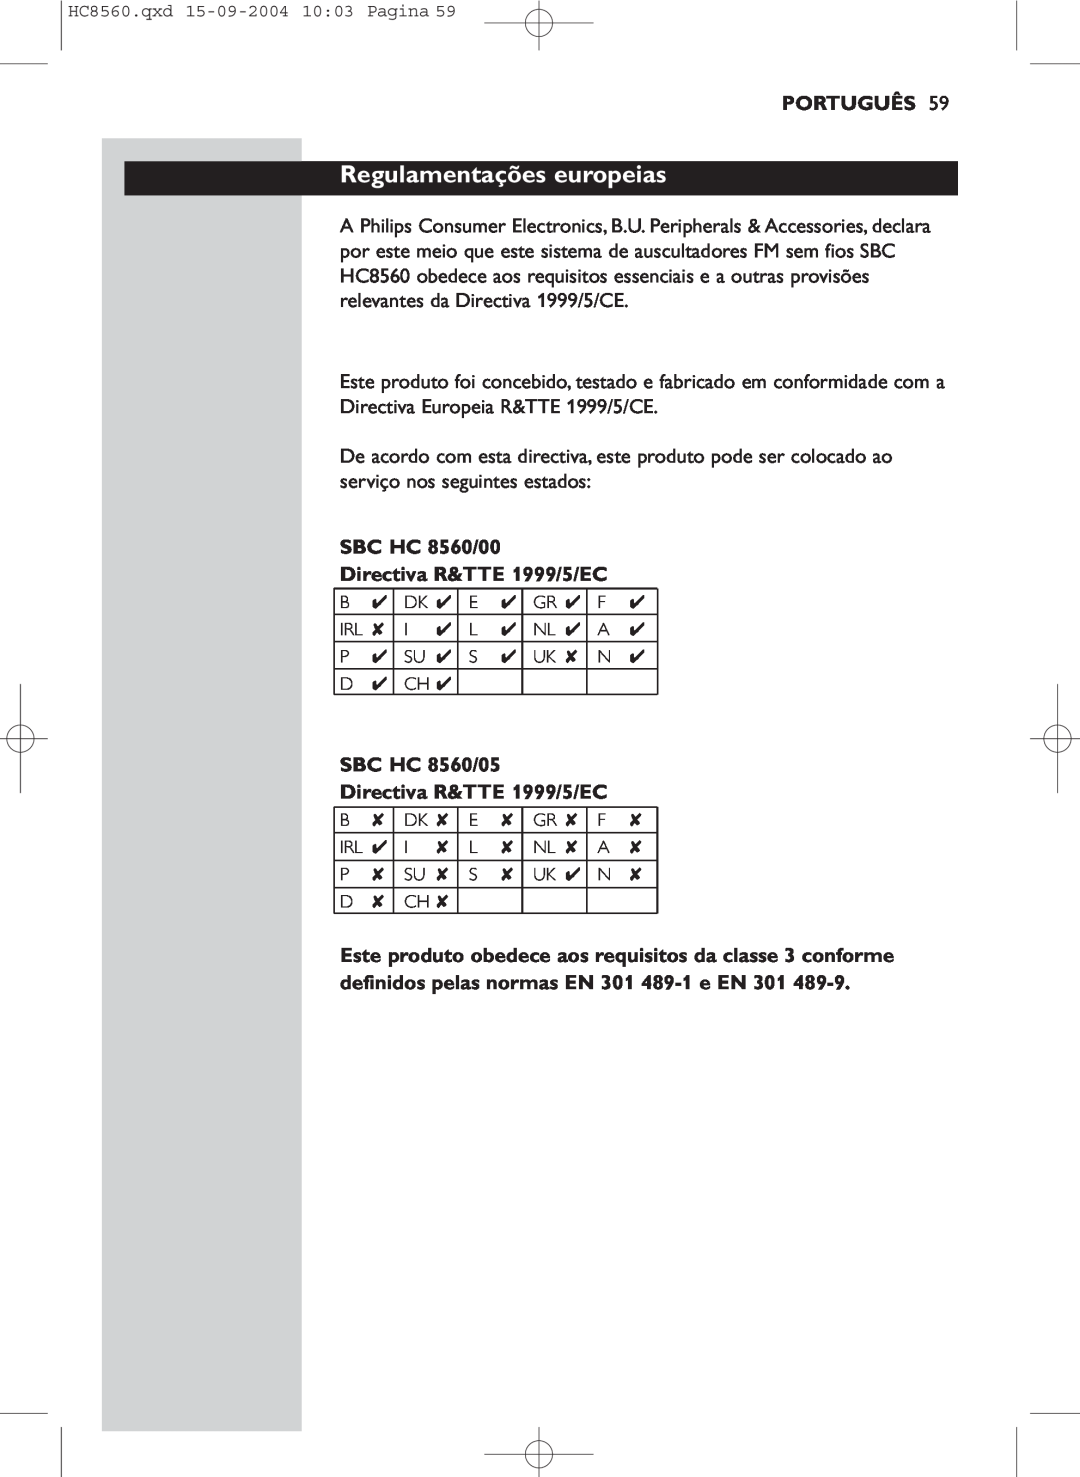 Philips manual Regulamentações europeias, Português, SBC HC 8560/00 Directiva R&TTE 1999/5/EC 